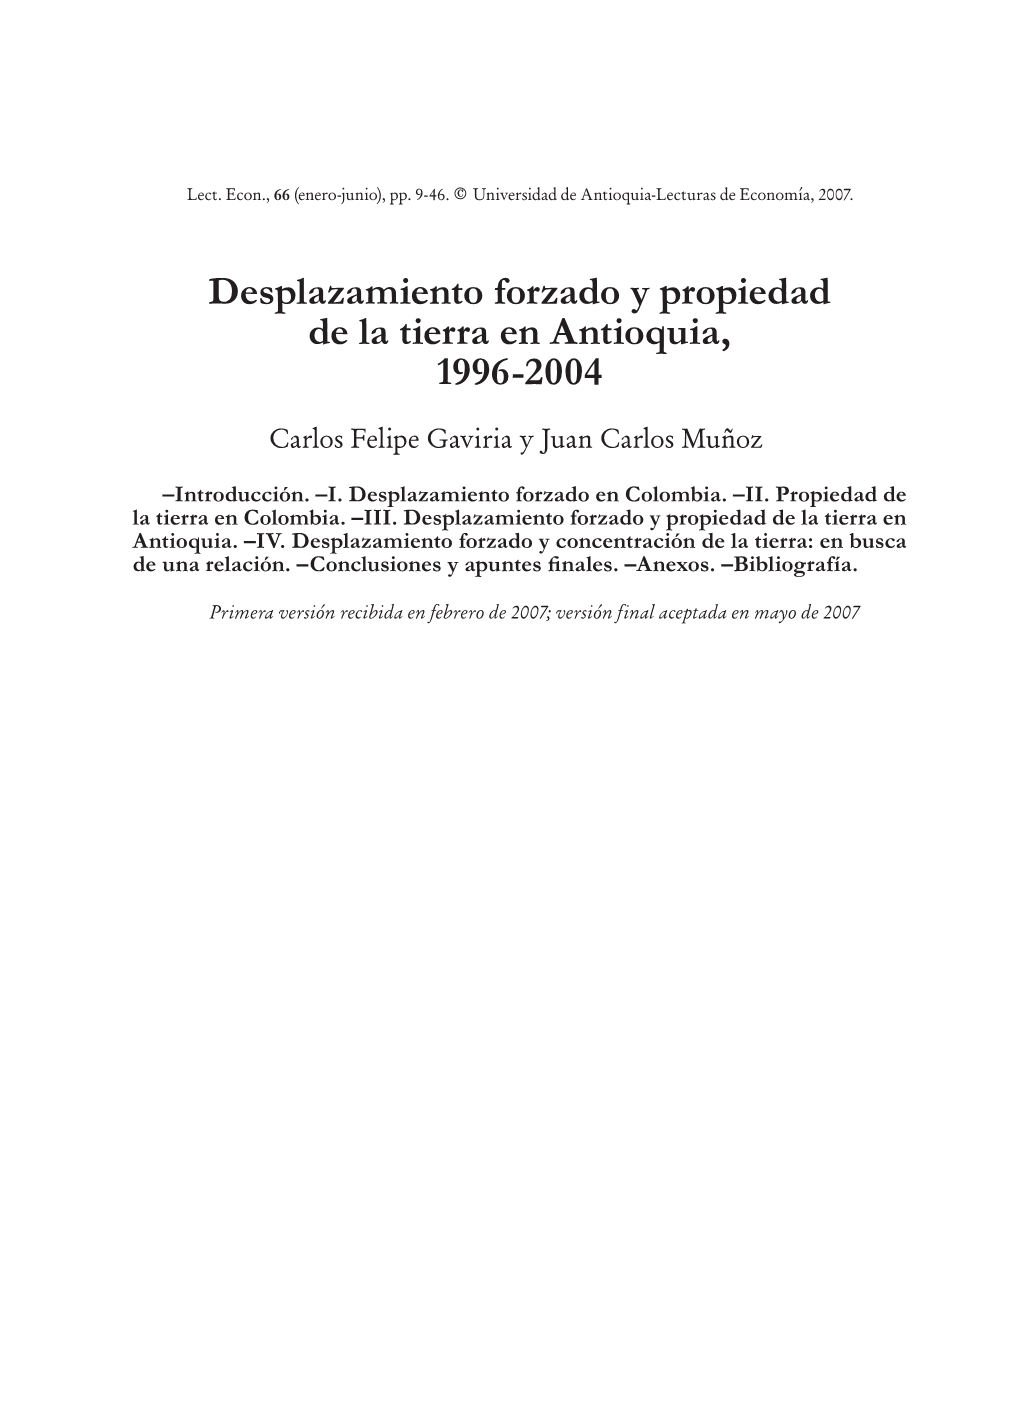 Desplazamiento Forzado Y Propiedad De La Tierra En Antioquia, 1996-2004